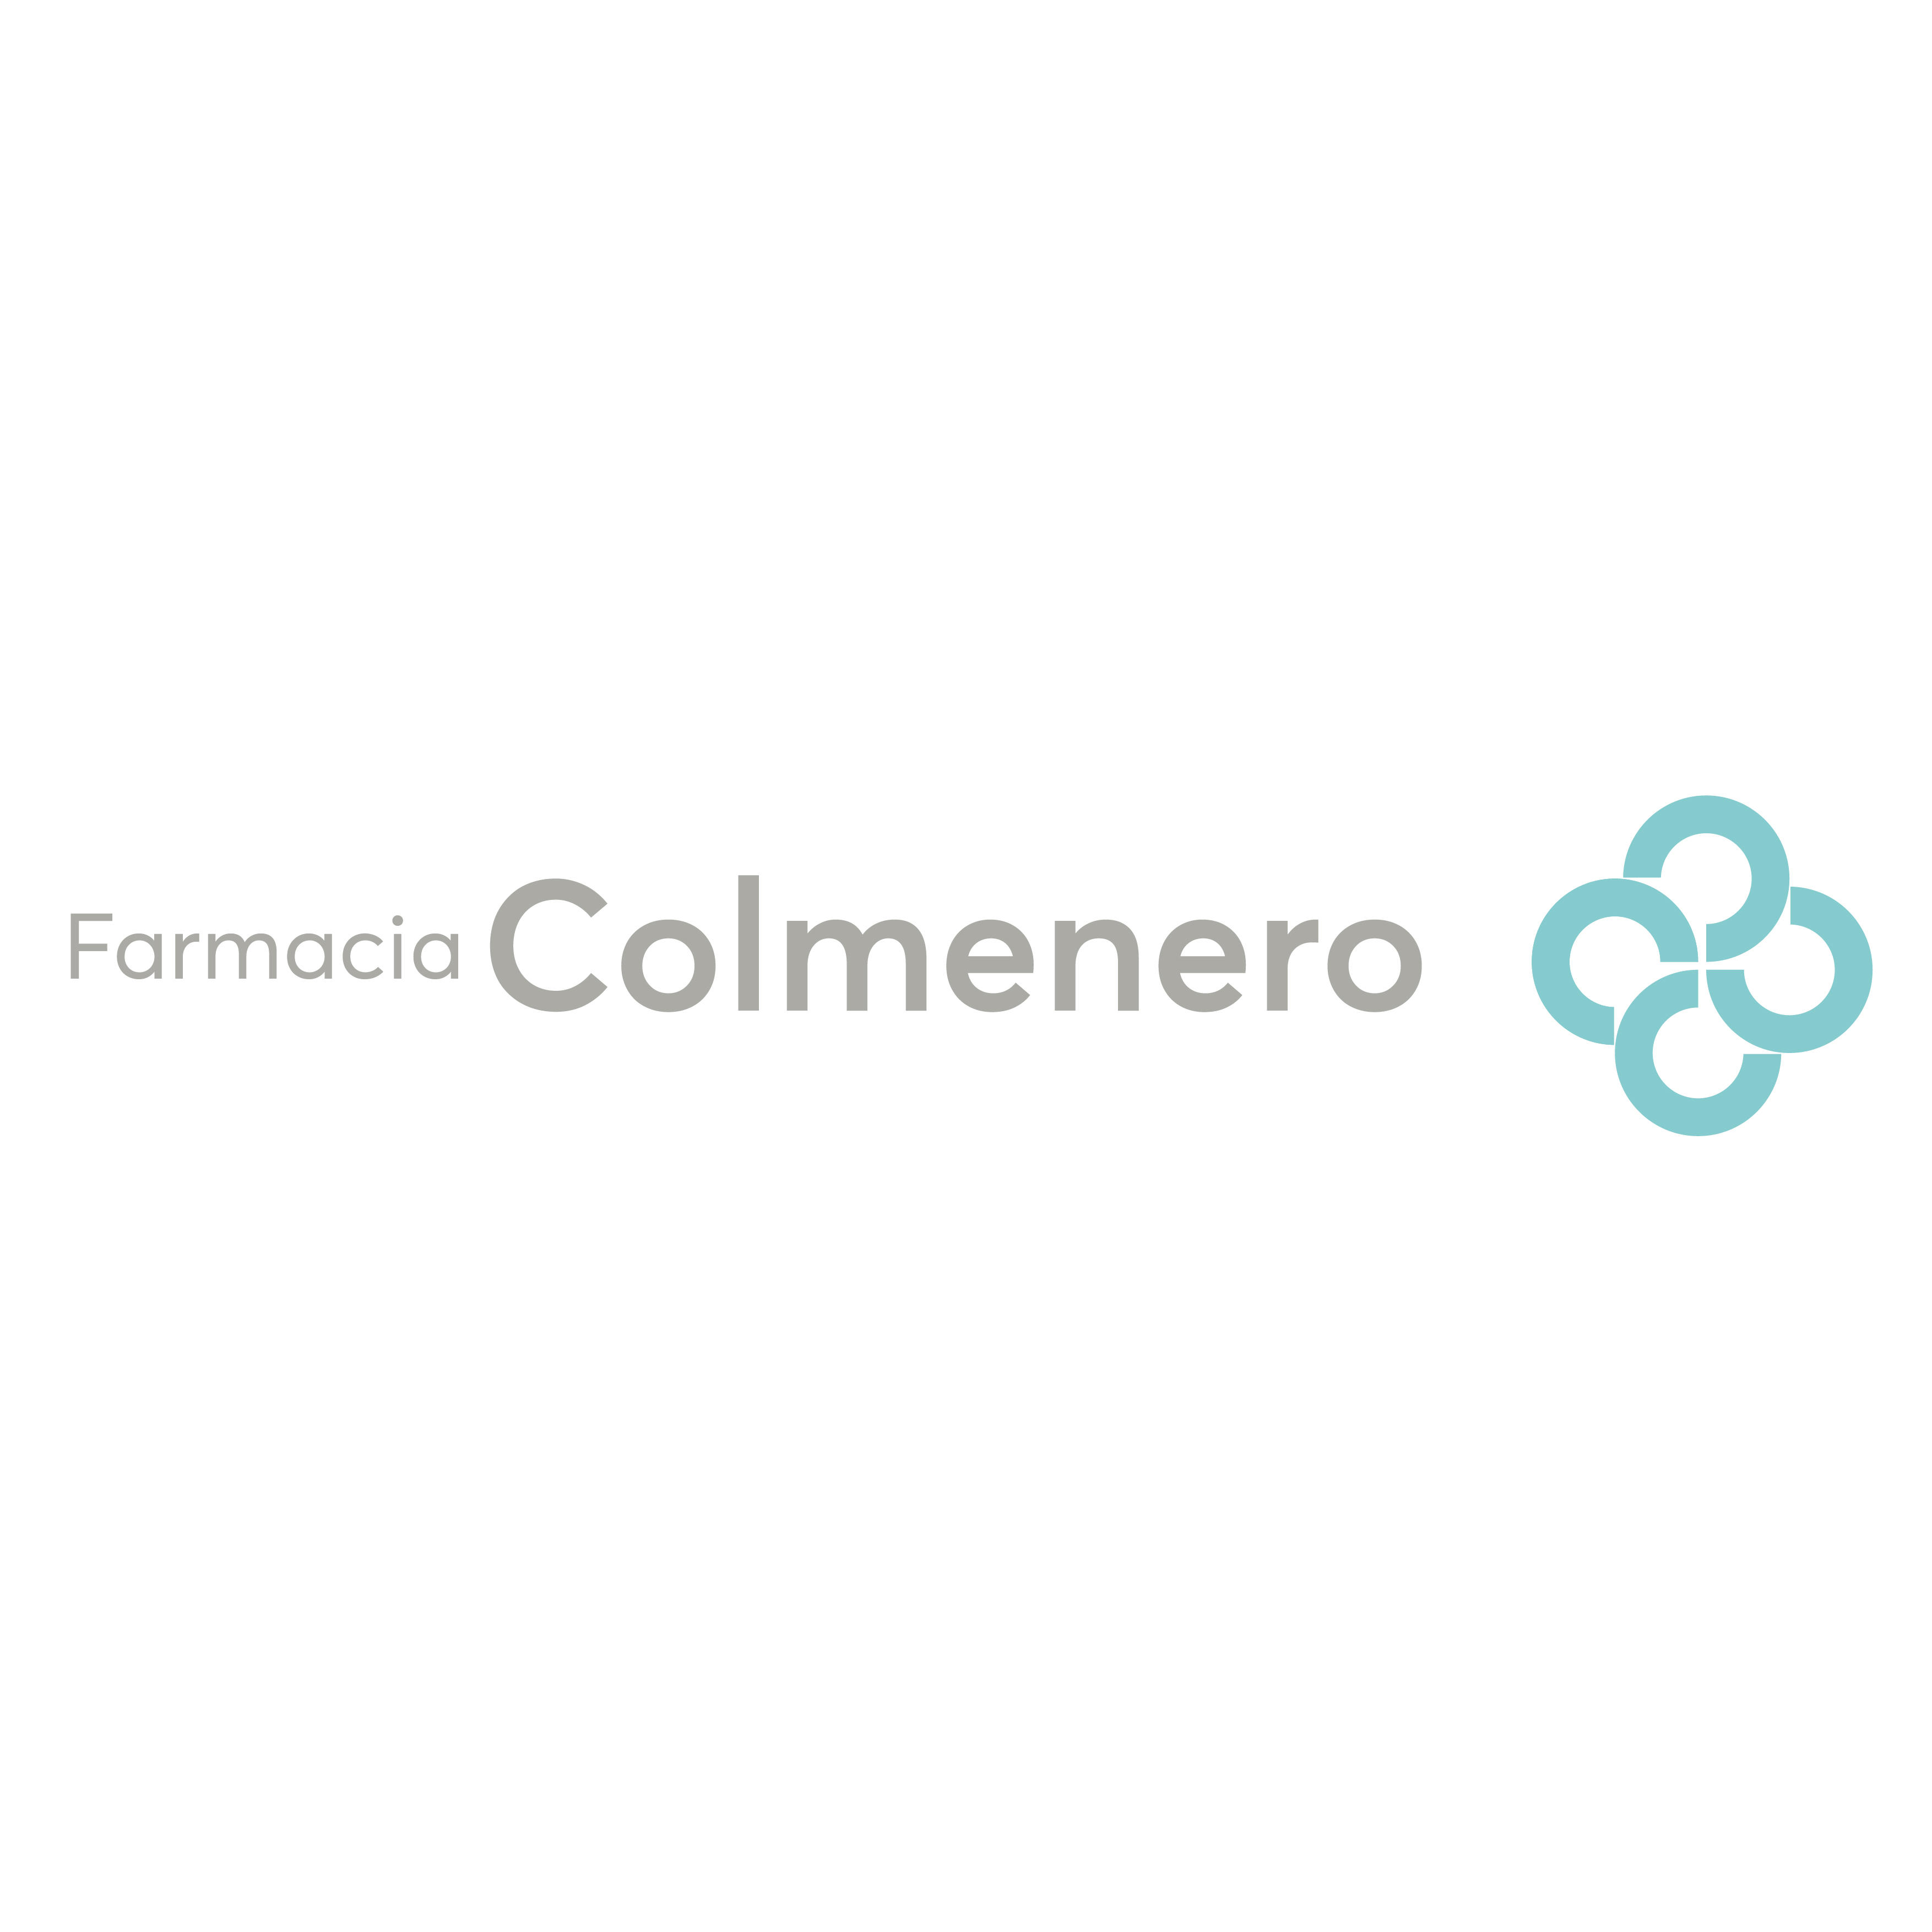 Farmacia Colmenero Logo